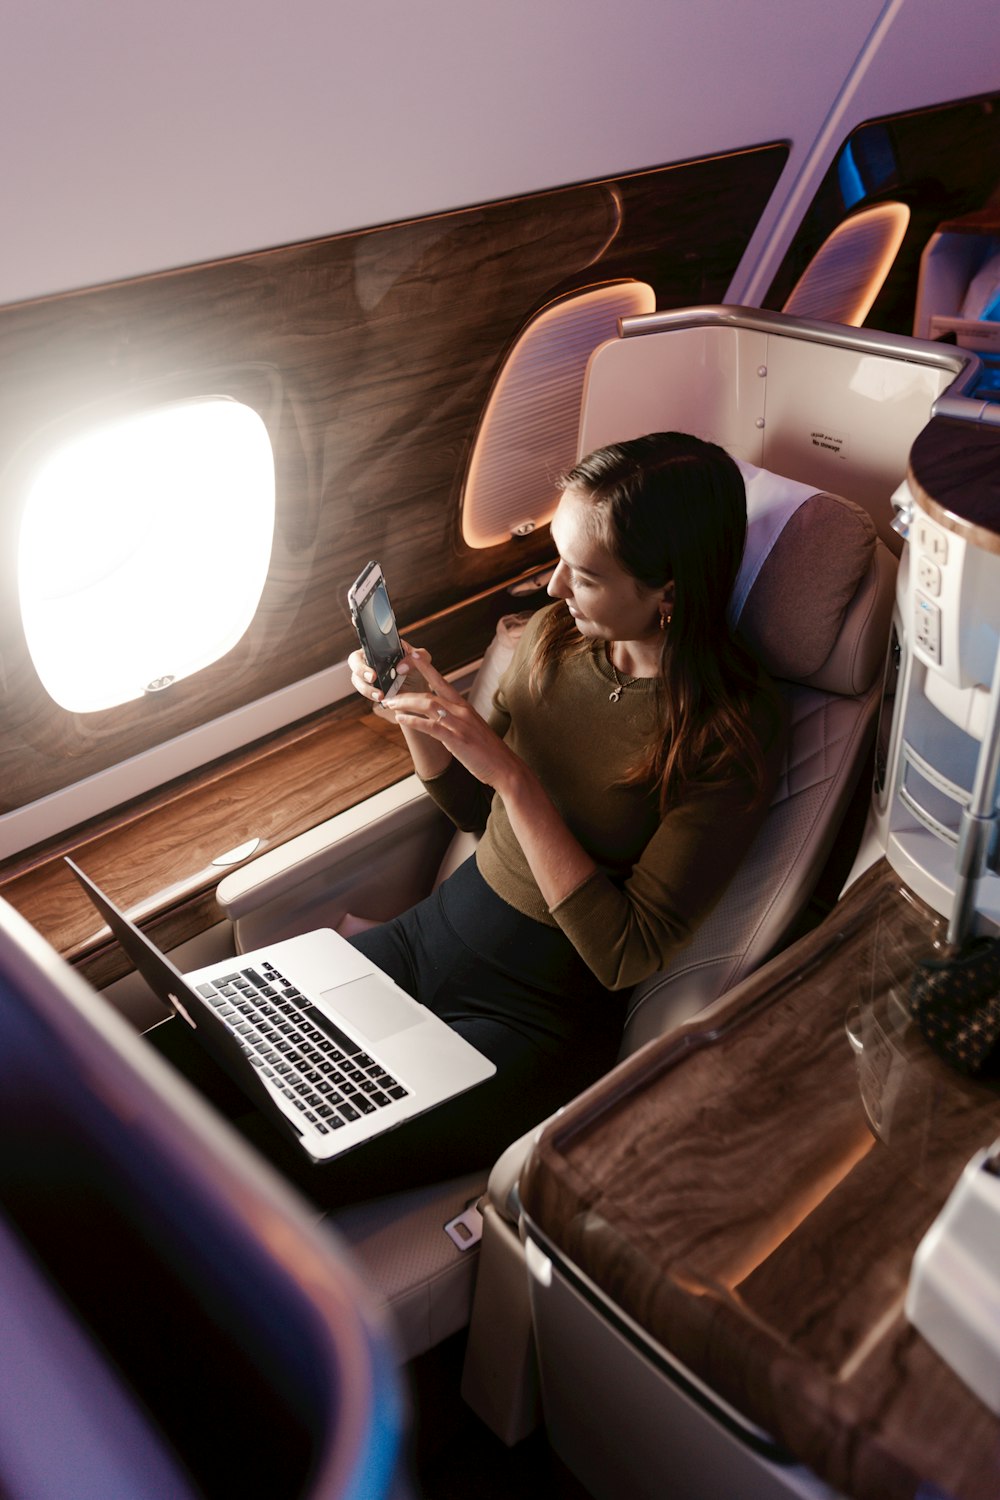 Una mujer sentada en un avión mirando su teléfono celular